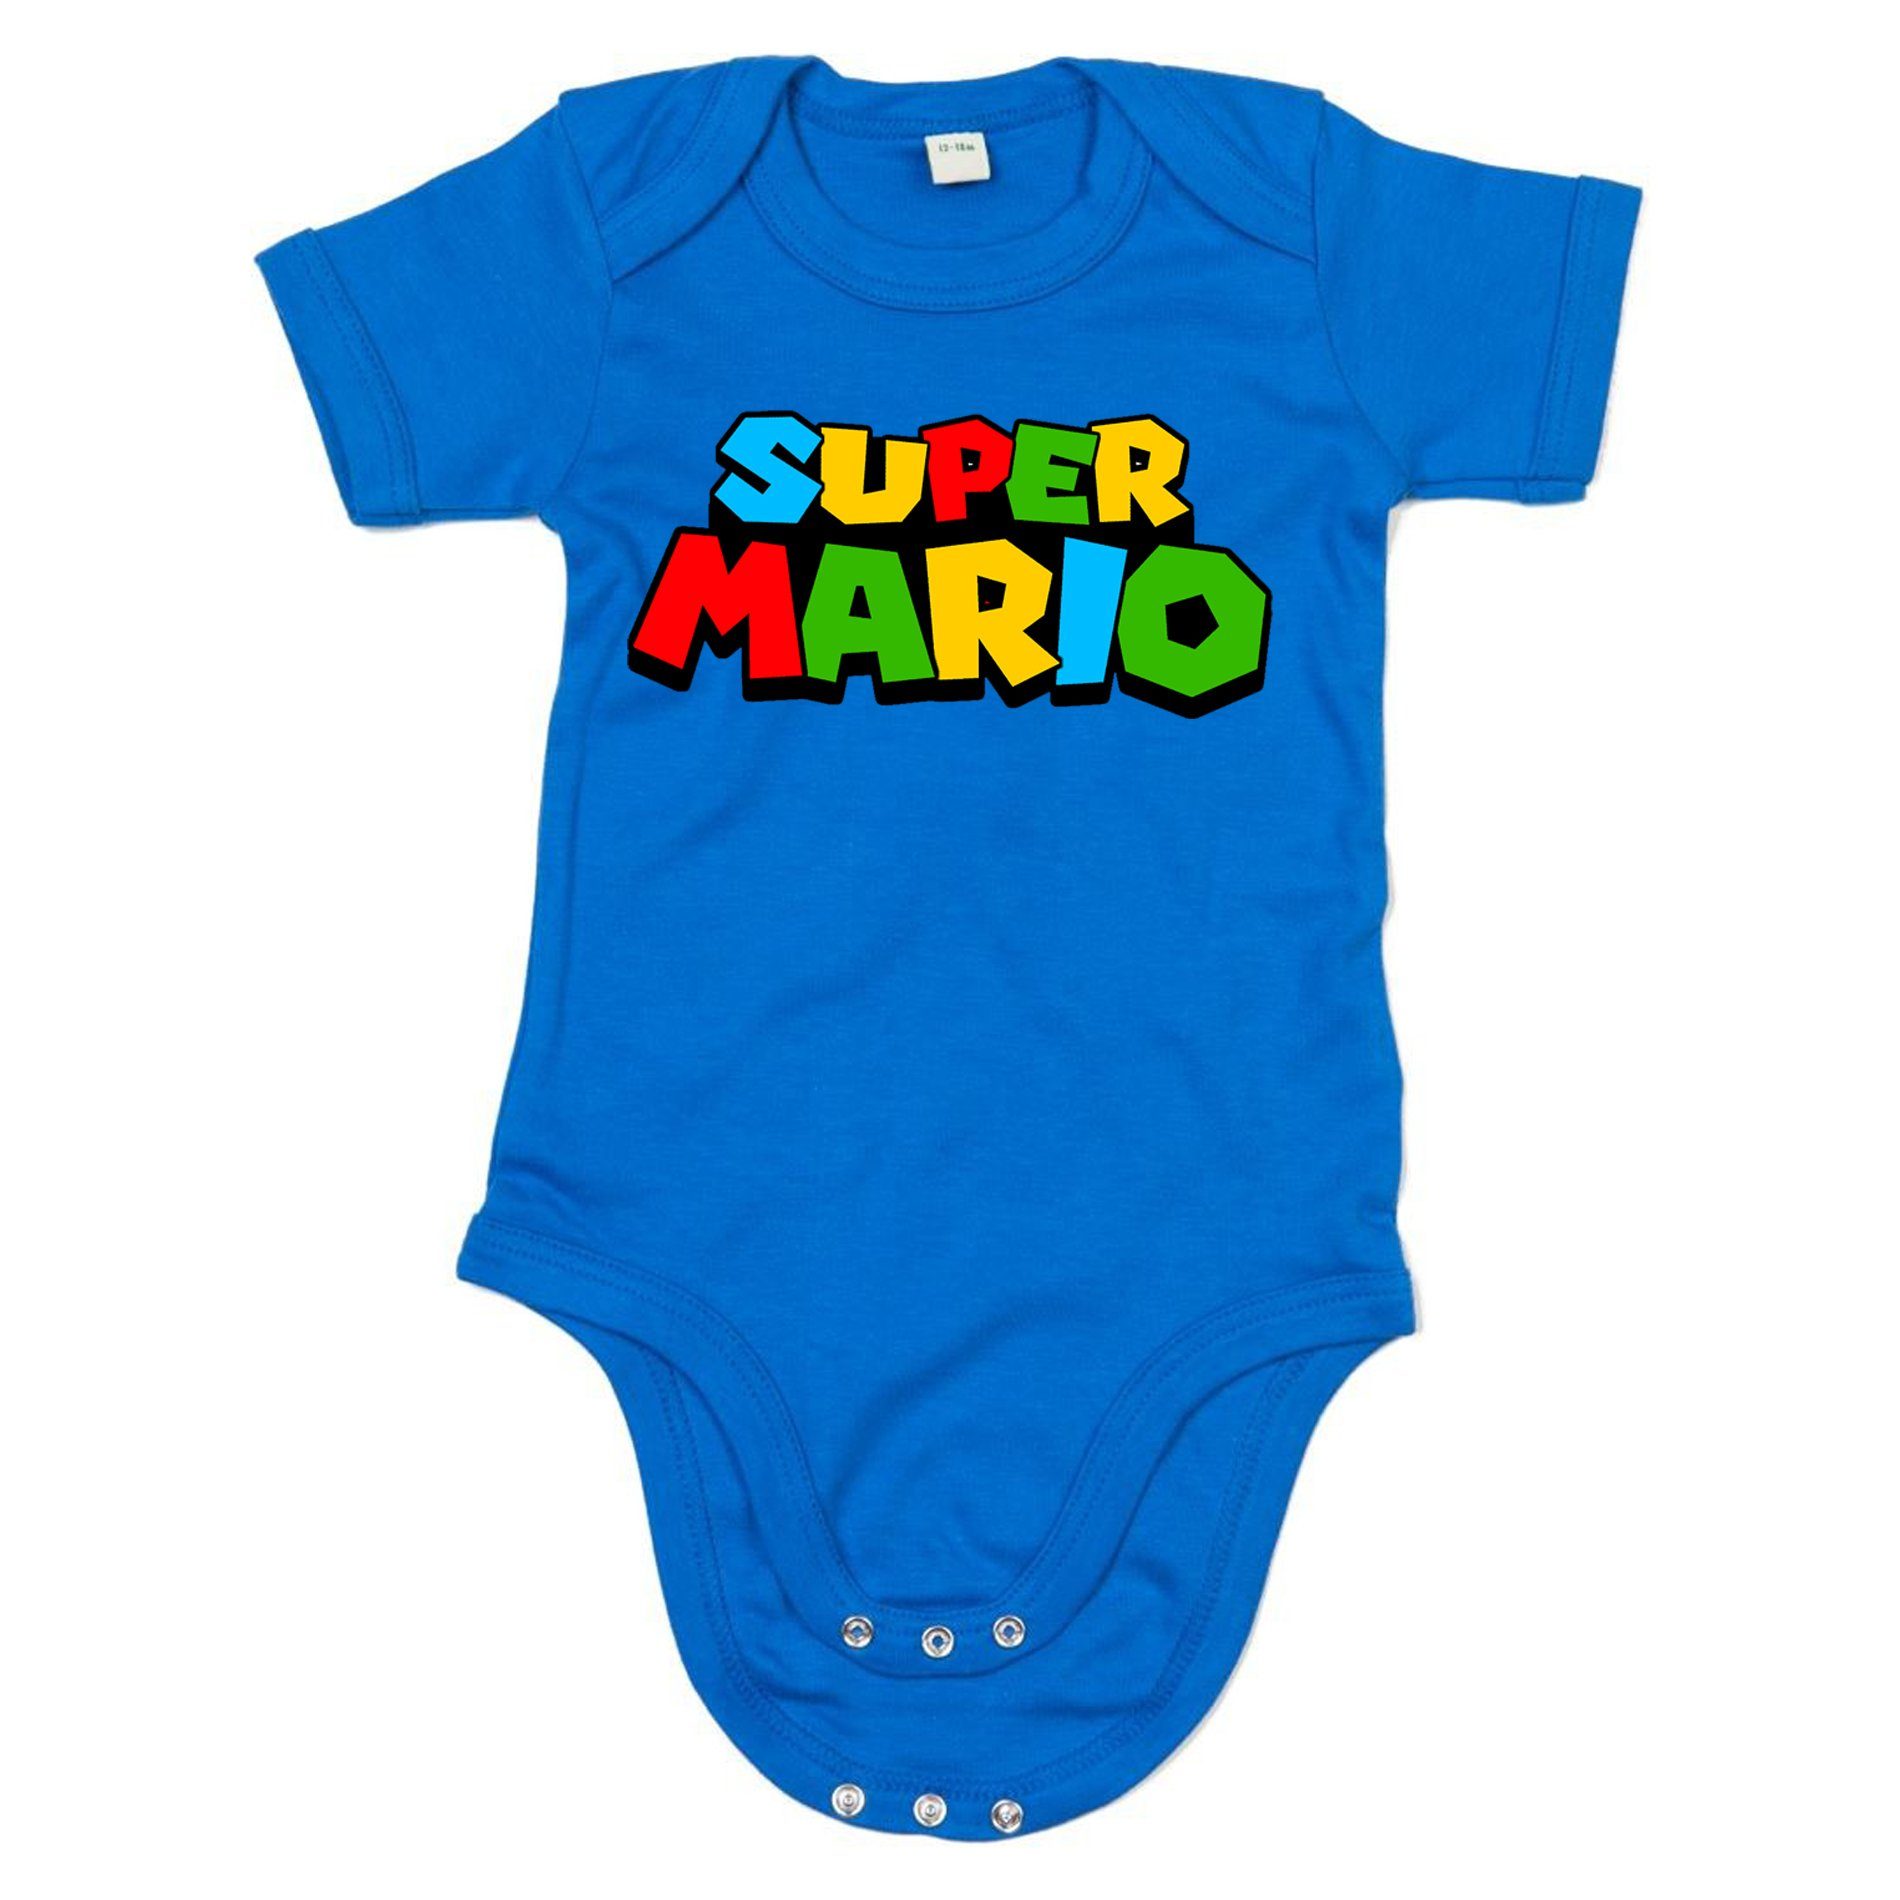 Blondie & Brownie Strampler Kinder Baby Super Mario Nintendo Gamer Gaming Konsole Spiele Blau